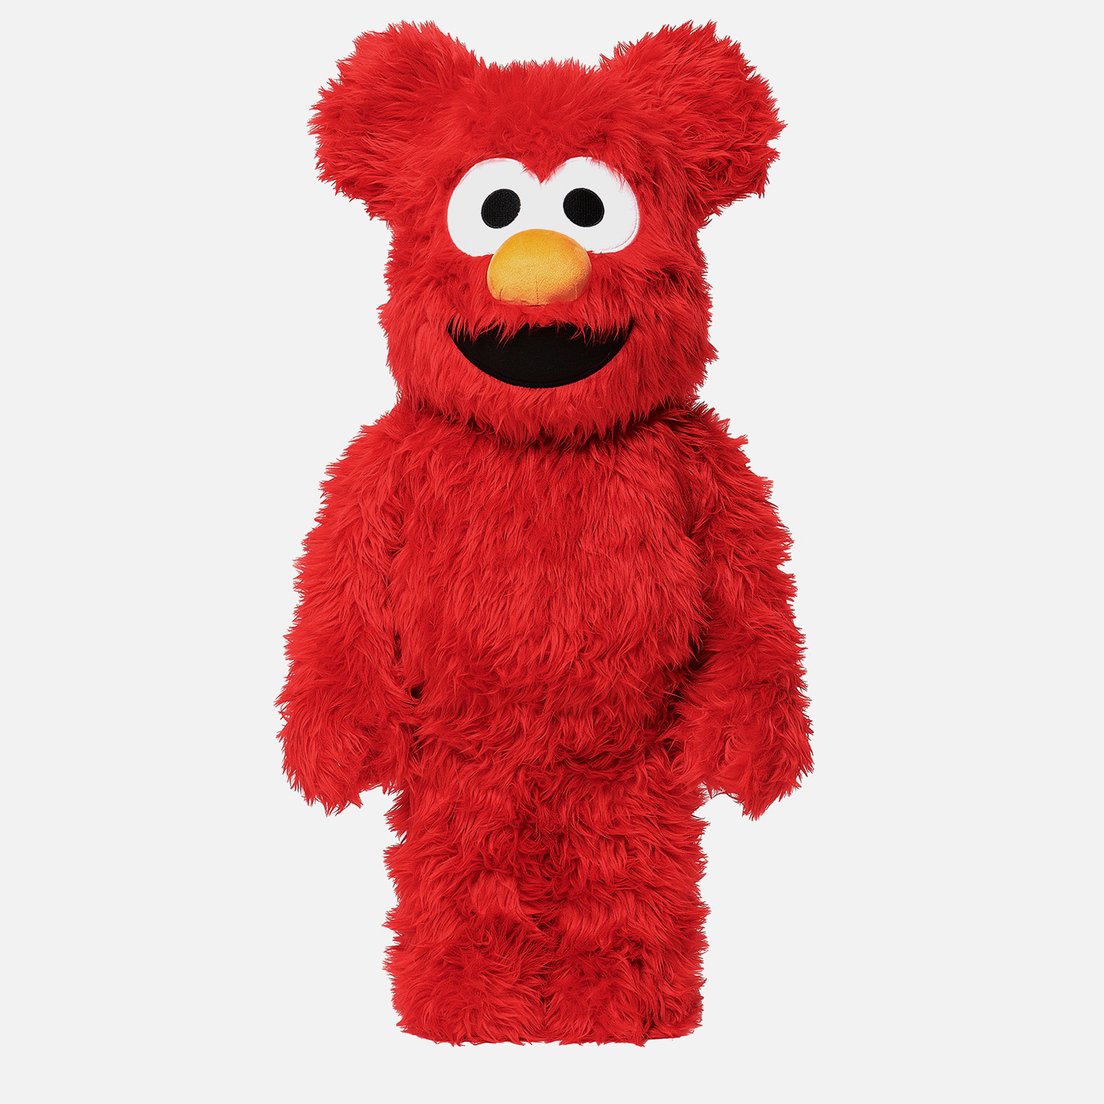 Medicom Toy Игрушка Bearbrick Elmo Costume 1000%